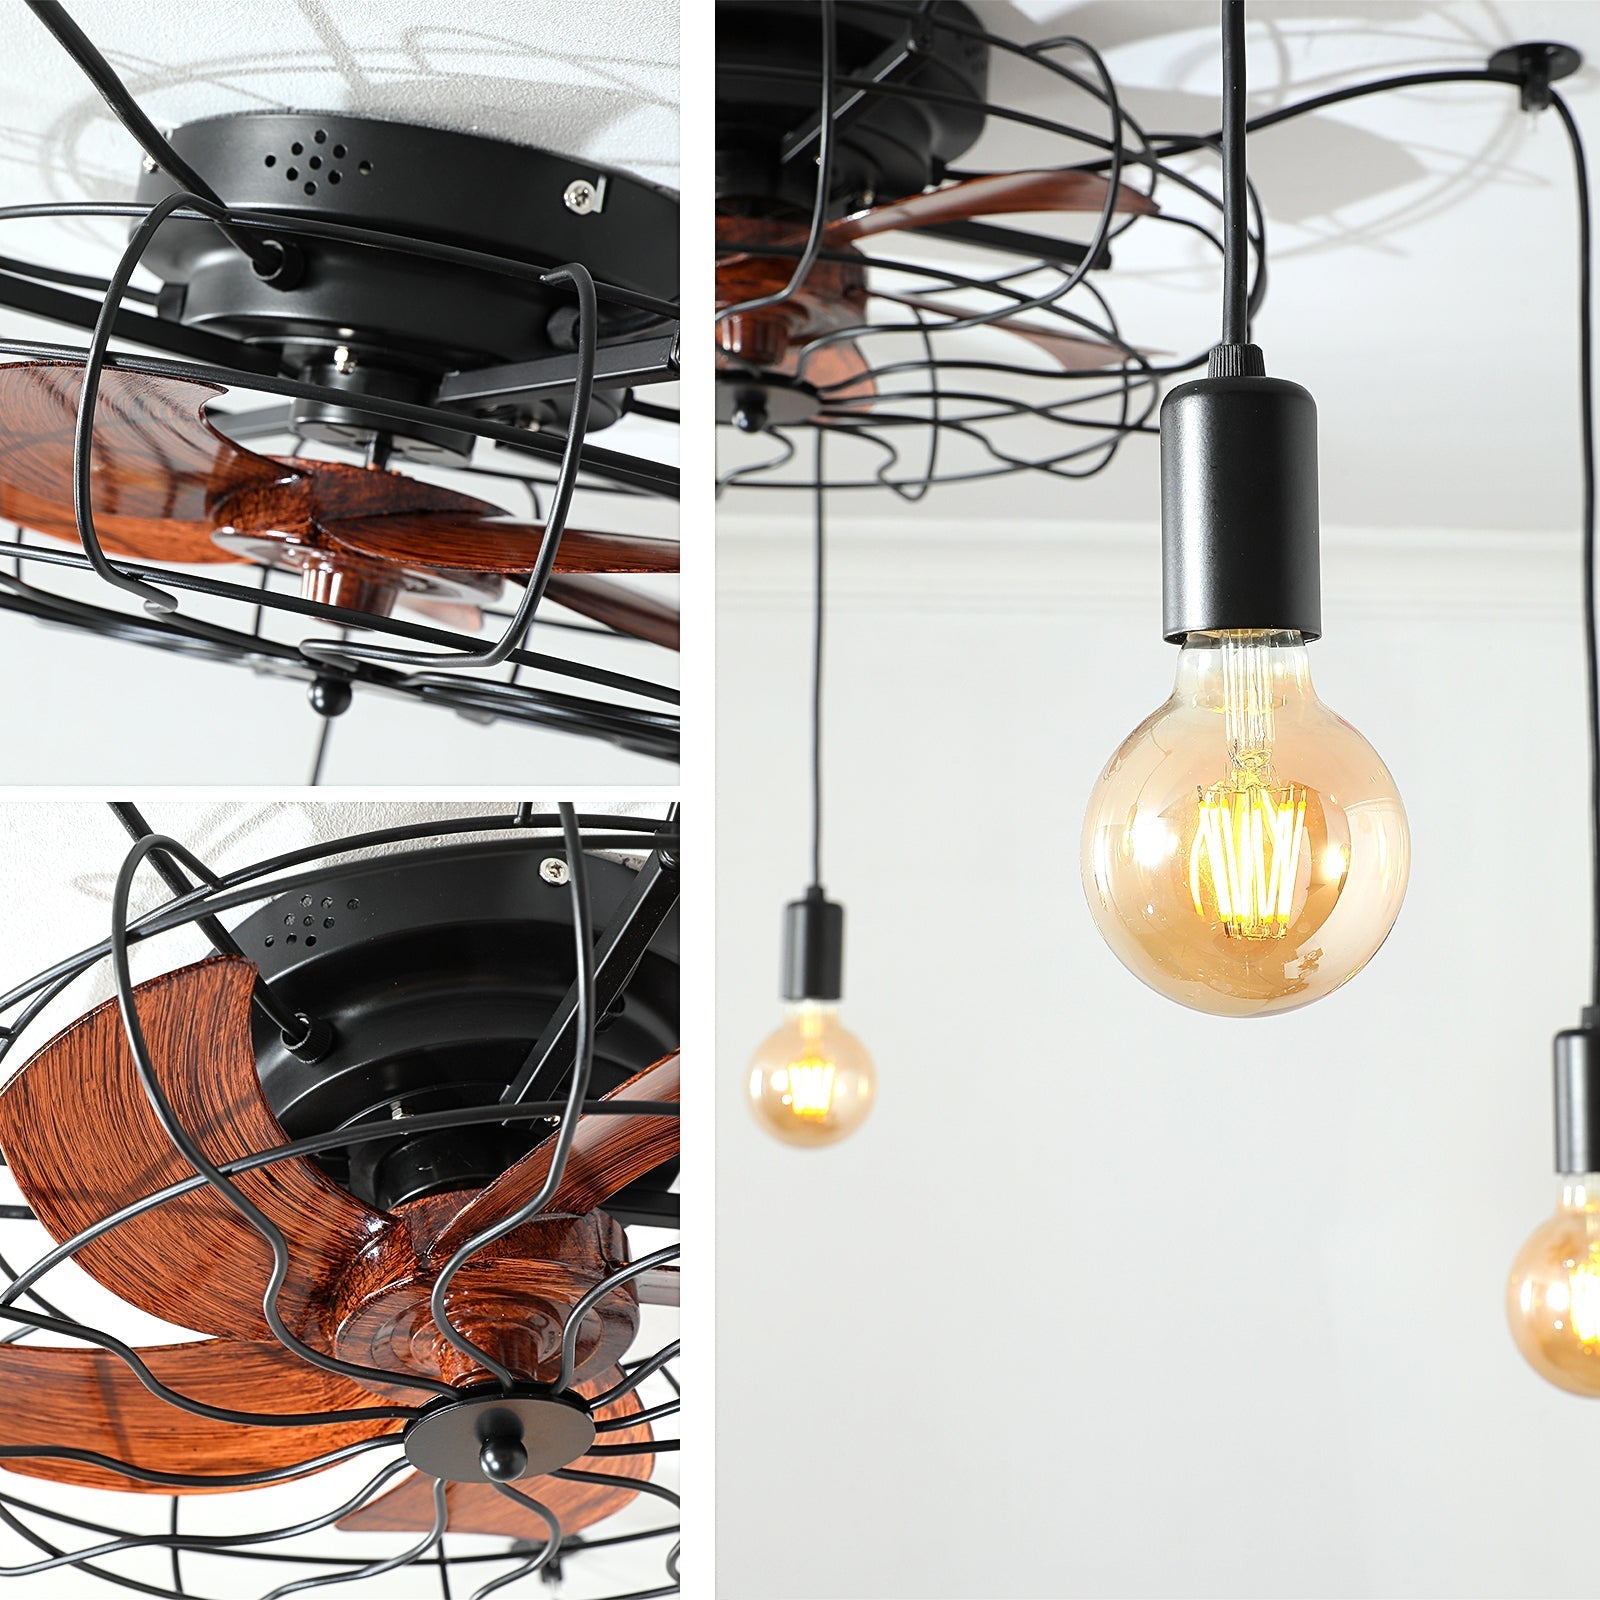 Vincenzo Ceiling Fan Lights With Remote Control, Flush Mount Vintage Industrial Fandelier for Living Room